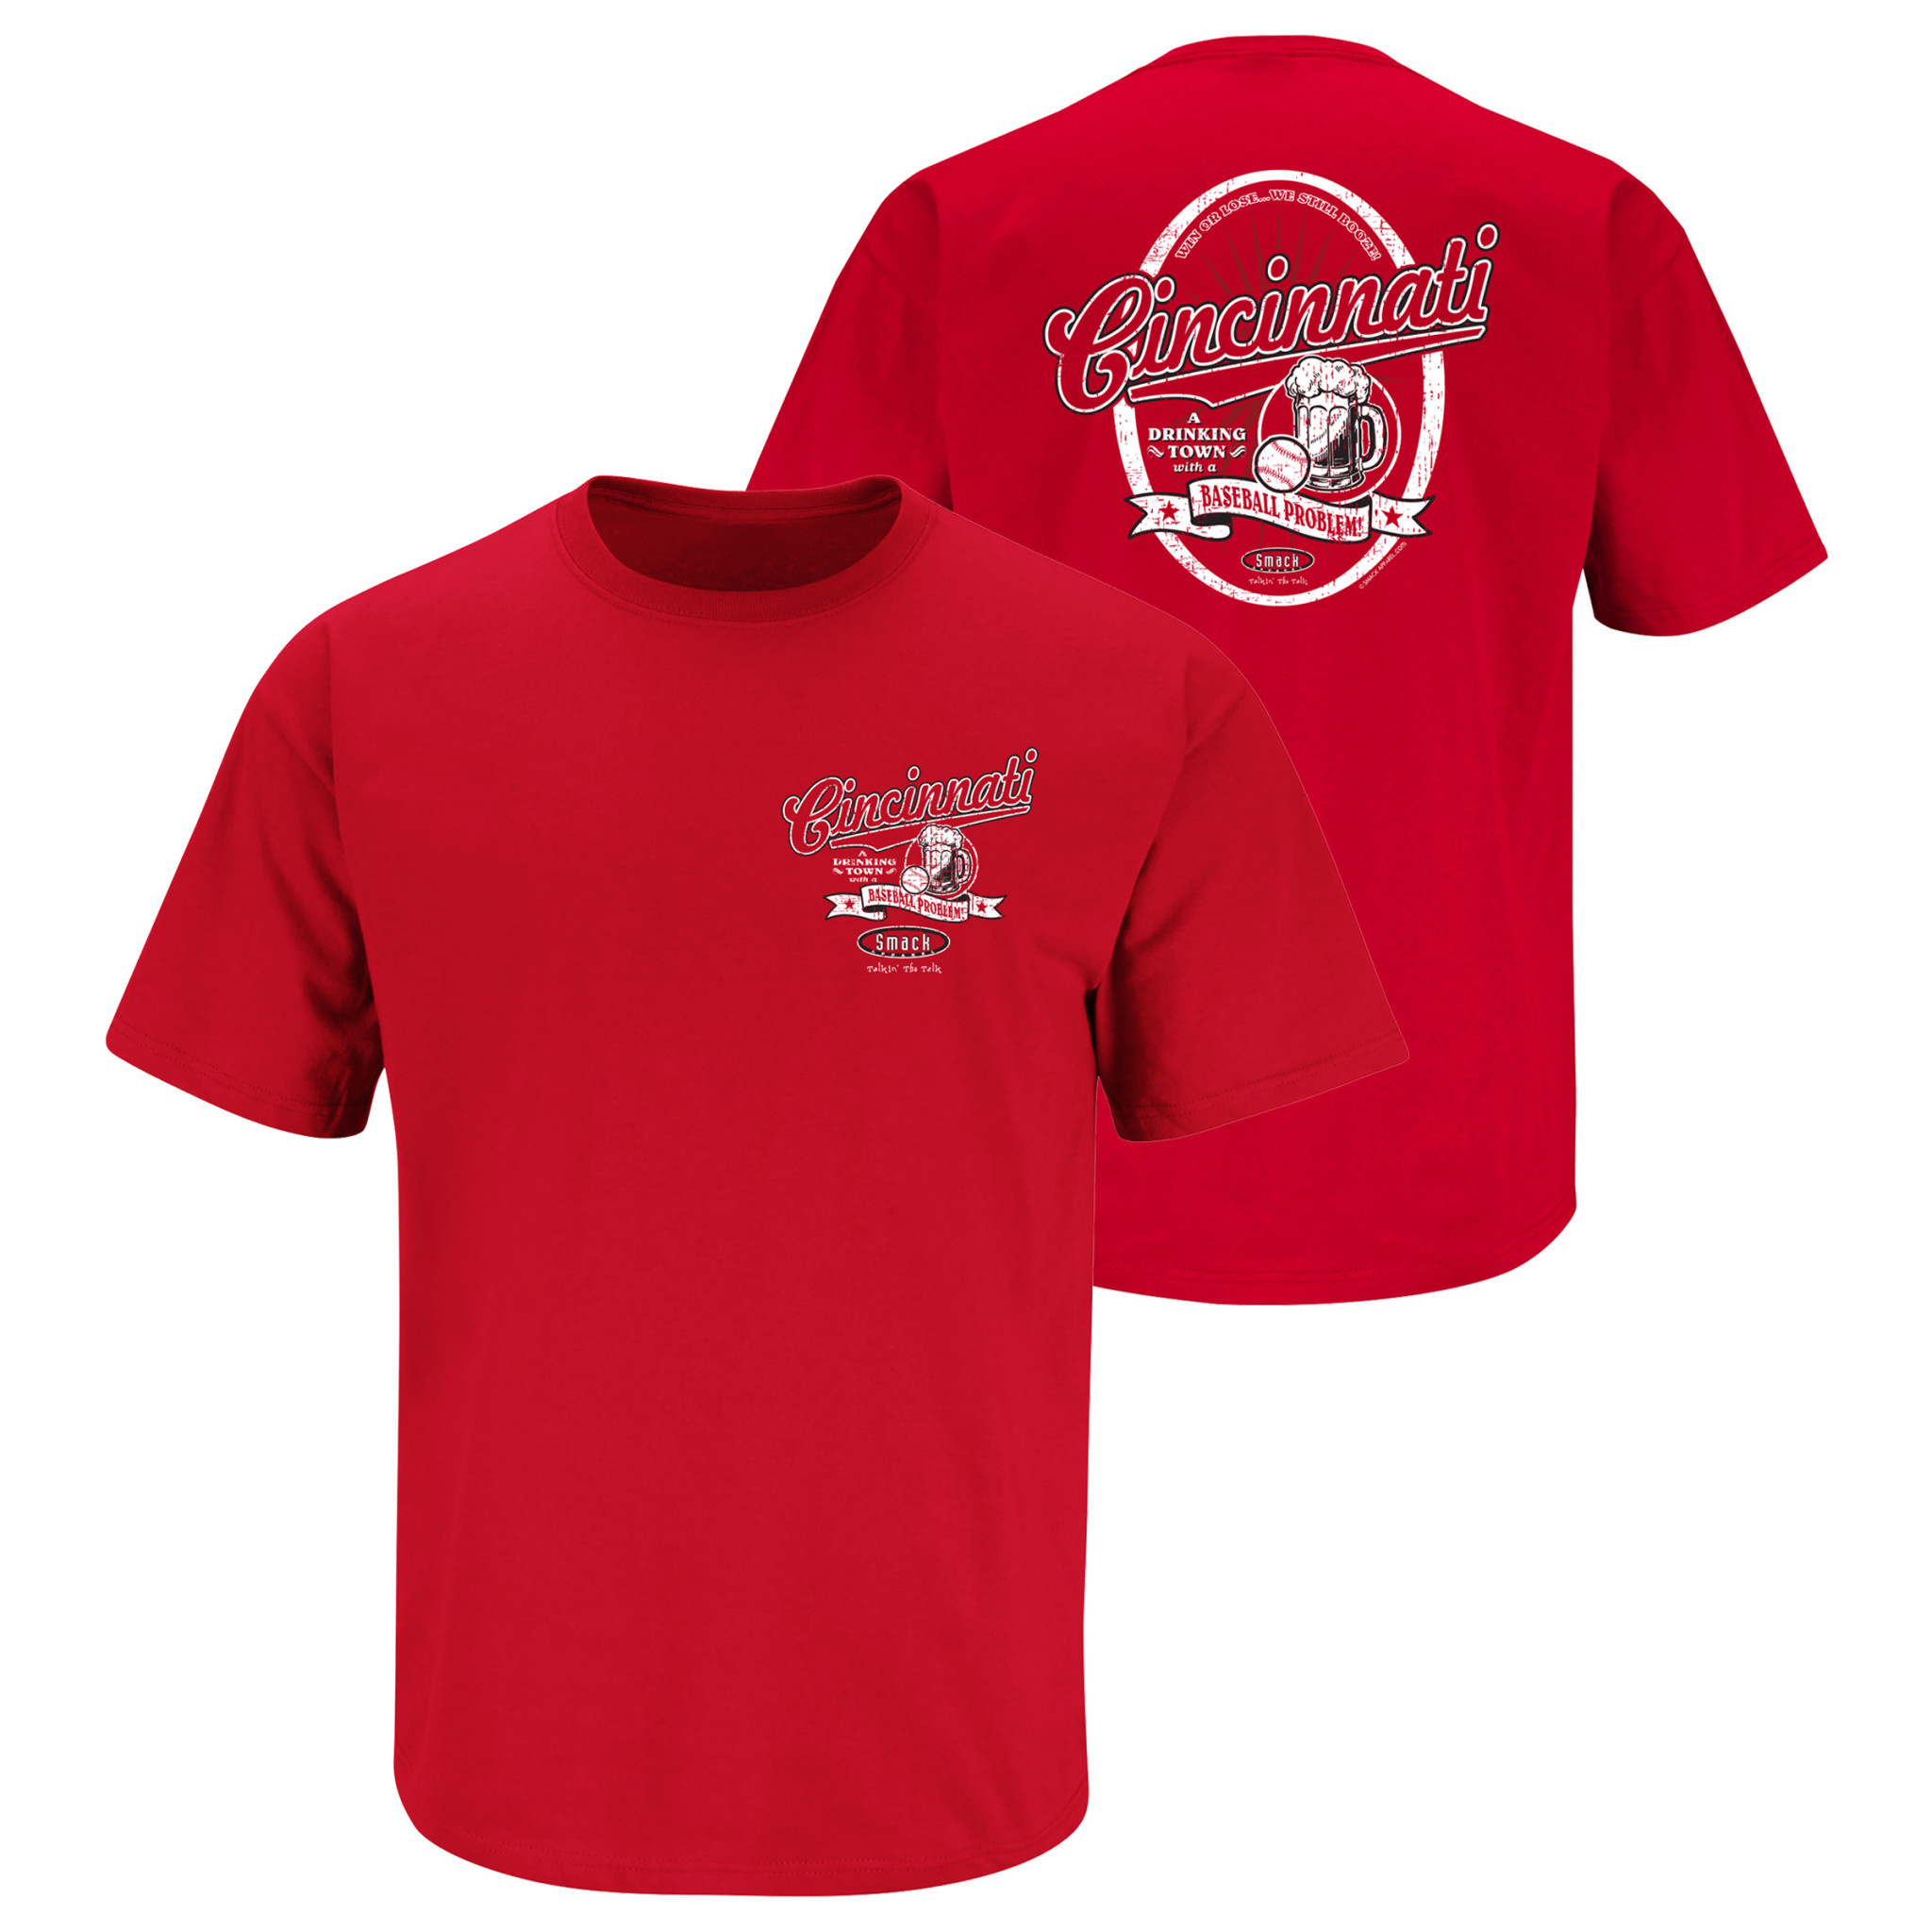 Official Cincinnati Reds Gear, Reds Jerseys, Store, Reds Gifts